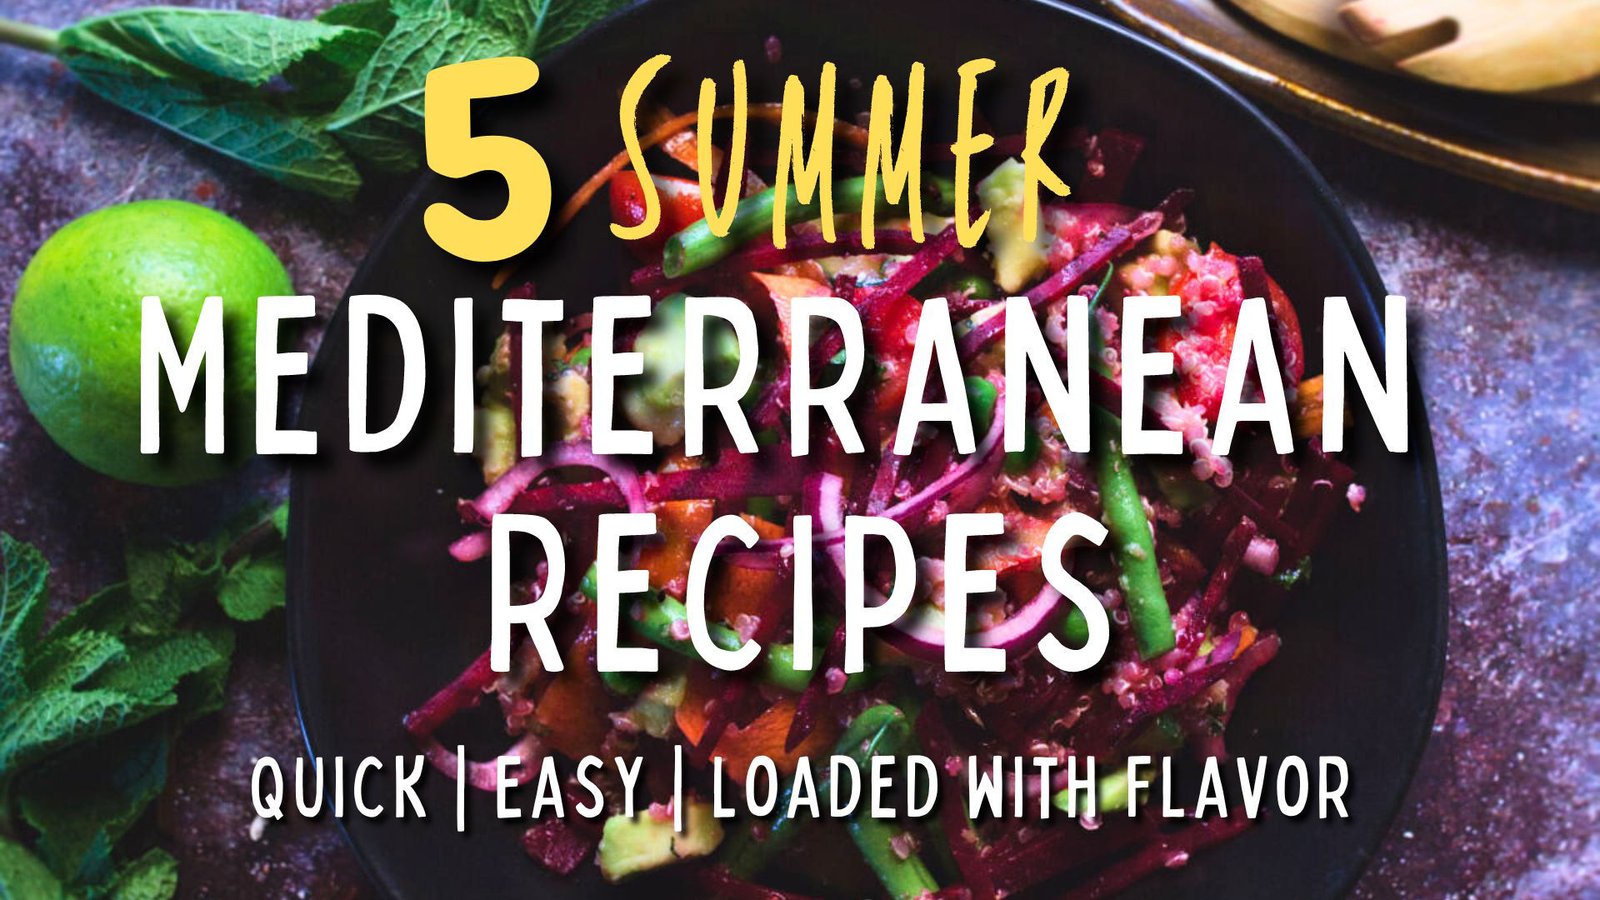 5 Summer Mediterranean Recipes